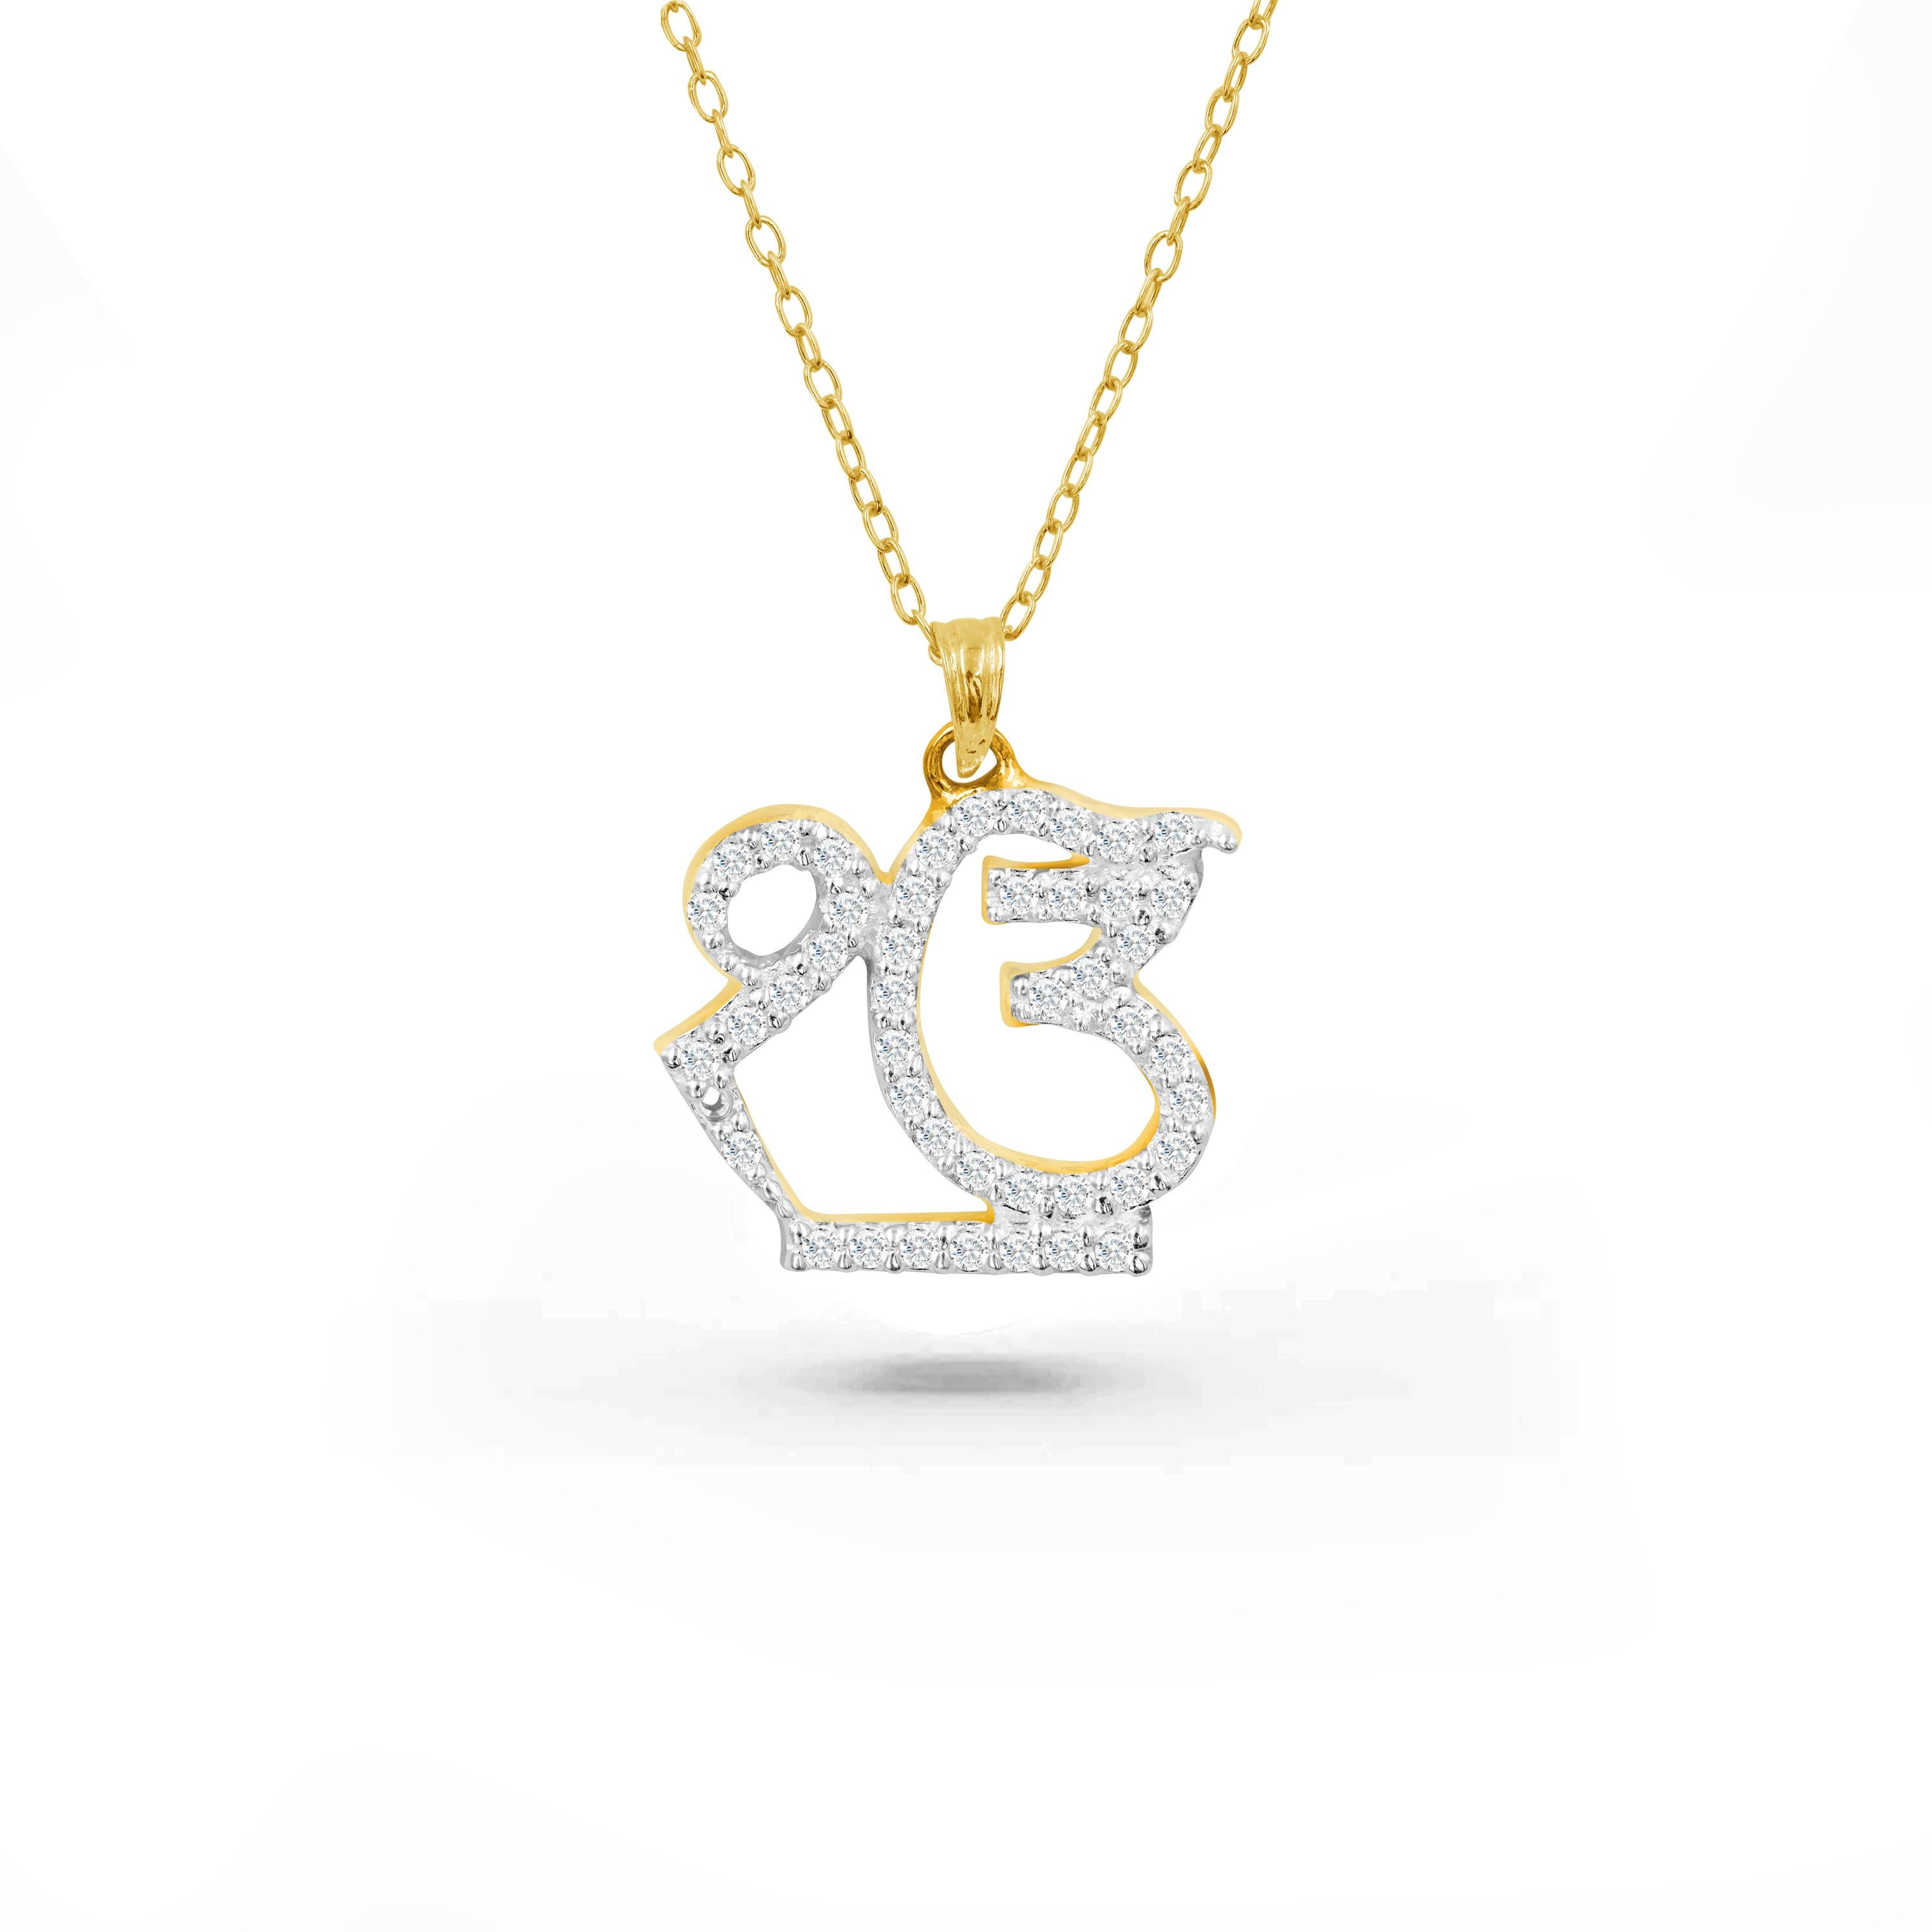 Le collier en diamant Ik Onkar, fabriqué à la main, est un collier parfait à porter tous les jours pour apporter paix intérieure et spiritualité. Ce magnifique collier religieux sikh est une pièce de choix. Ce collier sikhisme peut être personnalisé